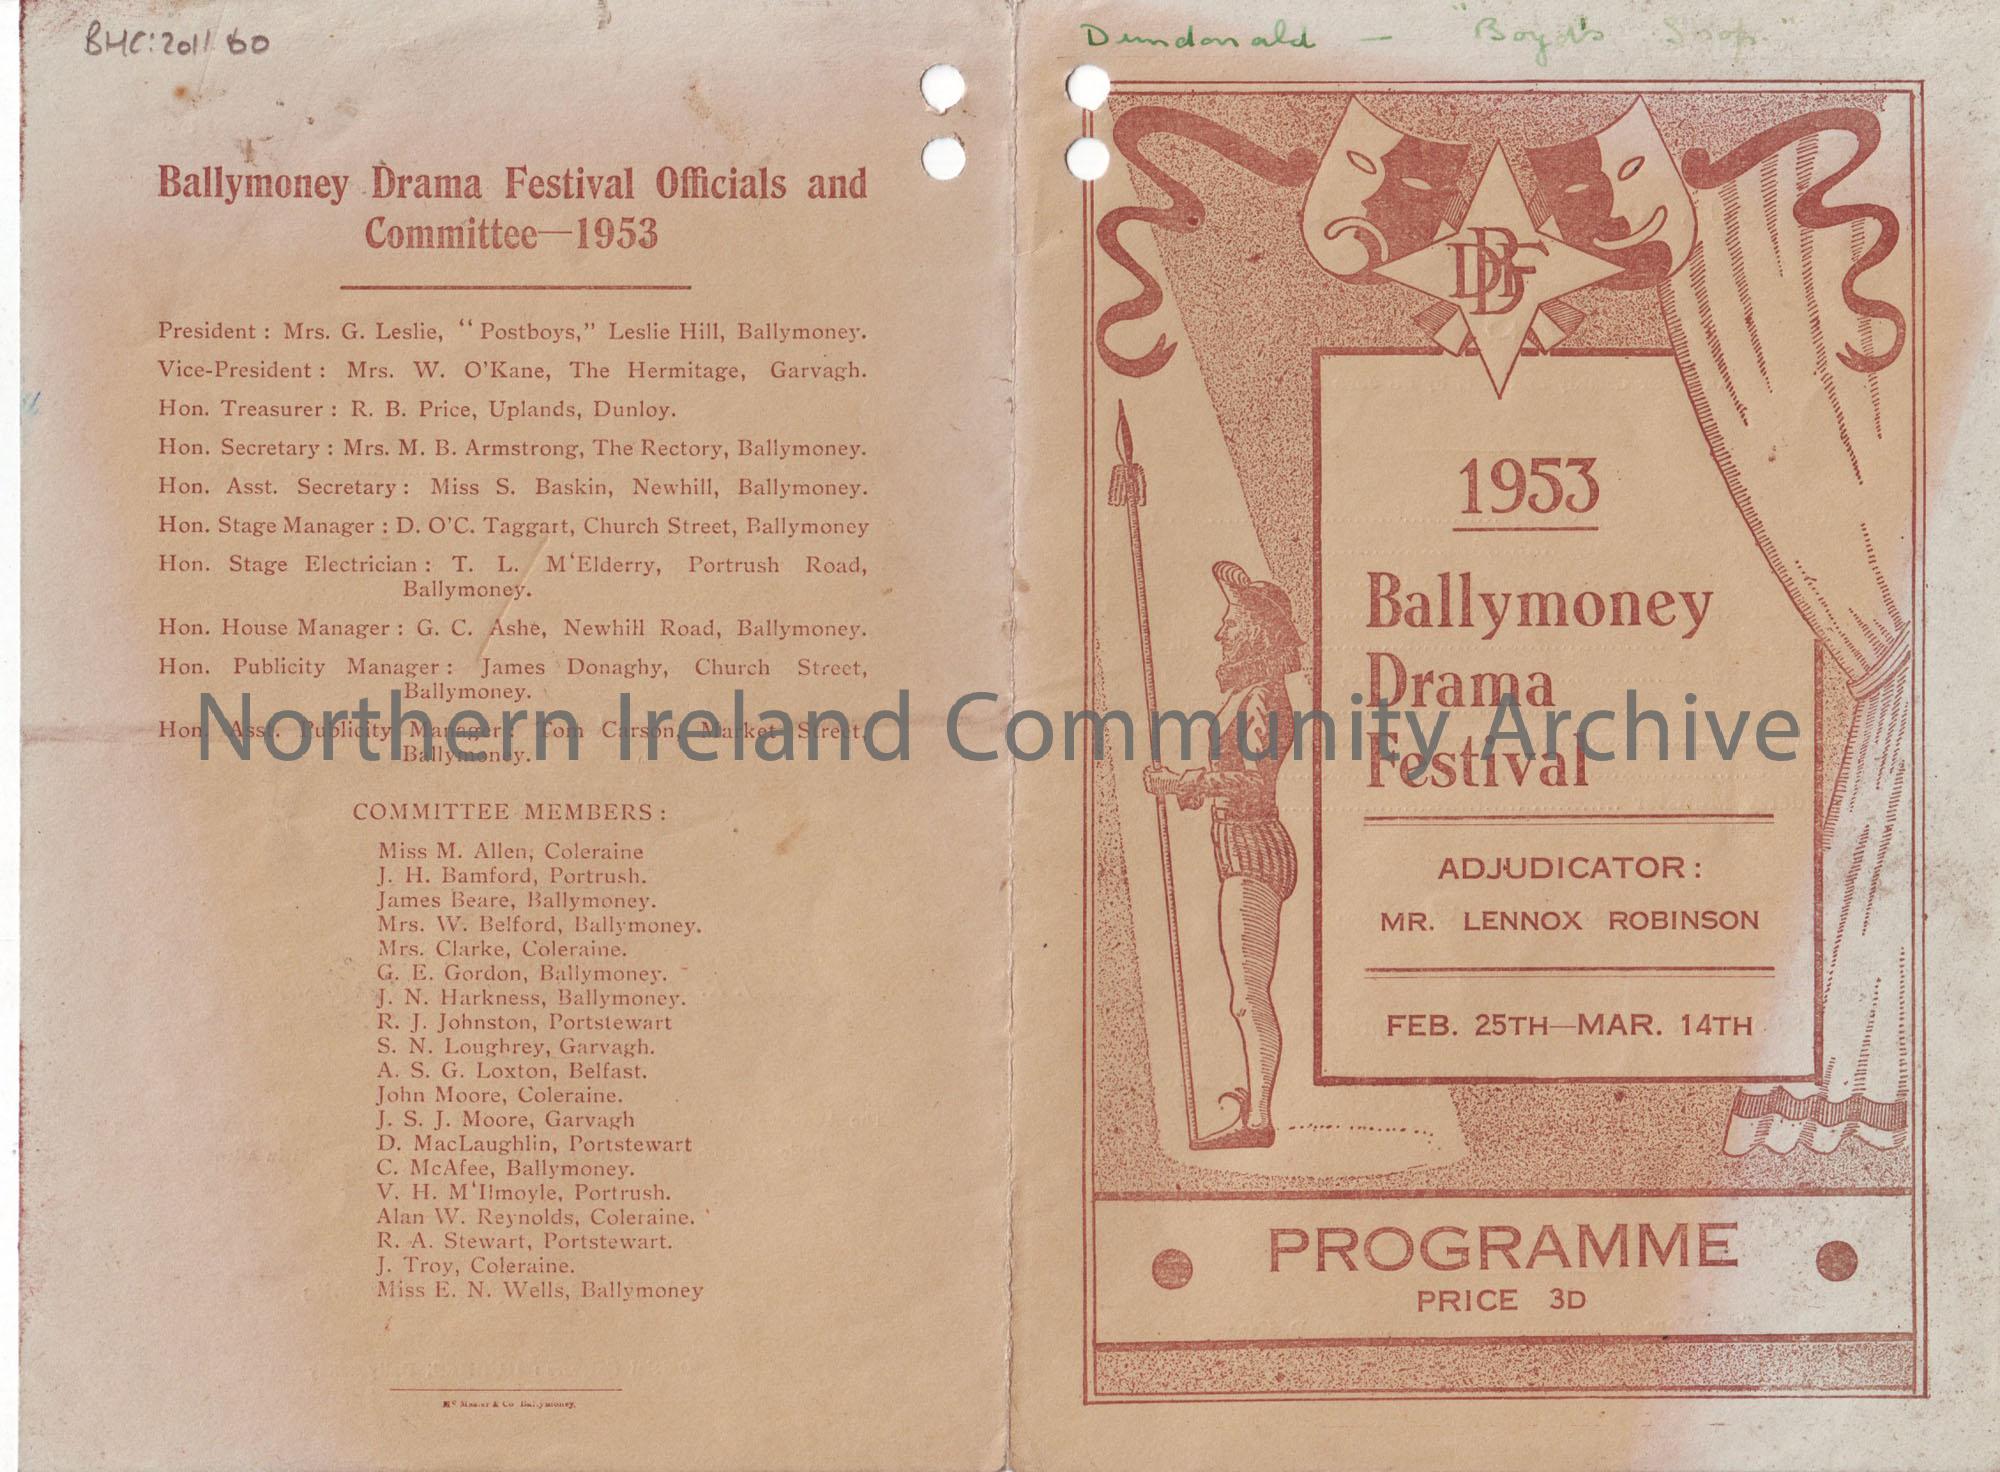 Programme for Ballymoney Drama Festival 1953, Feb 25th- Marc 14th